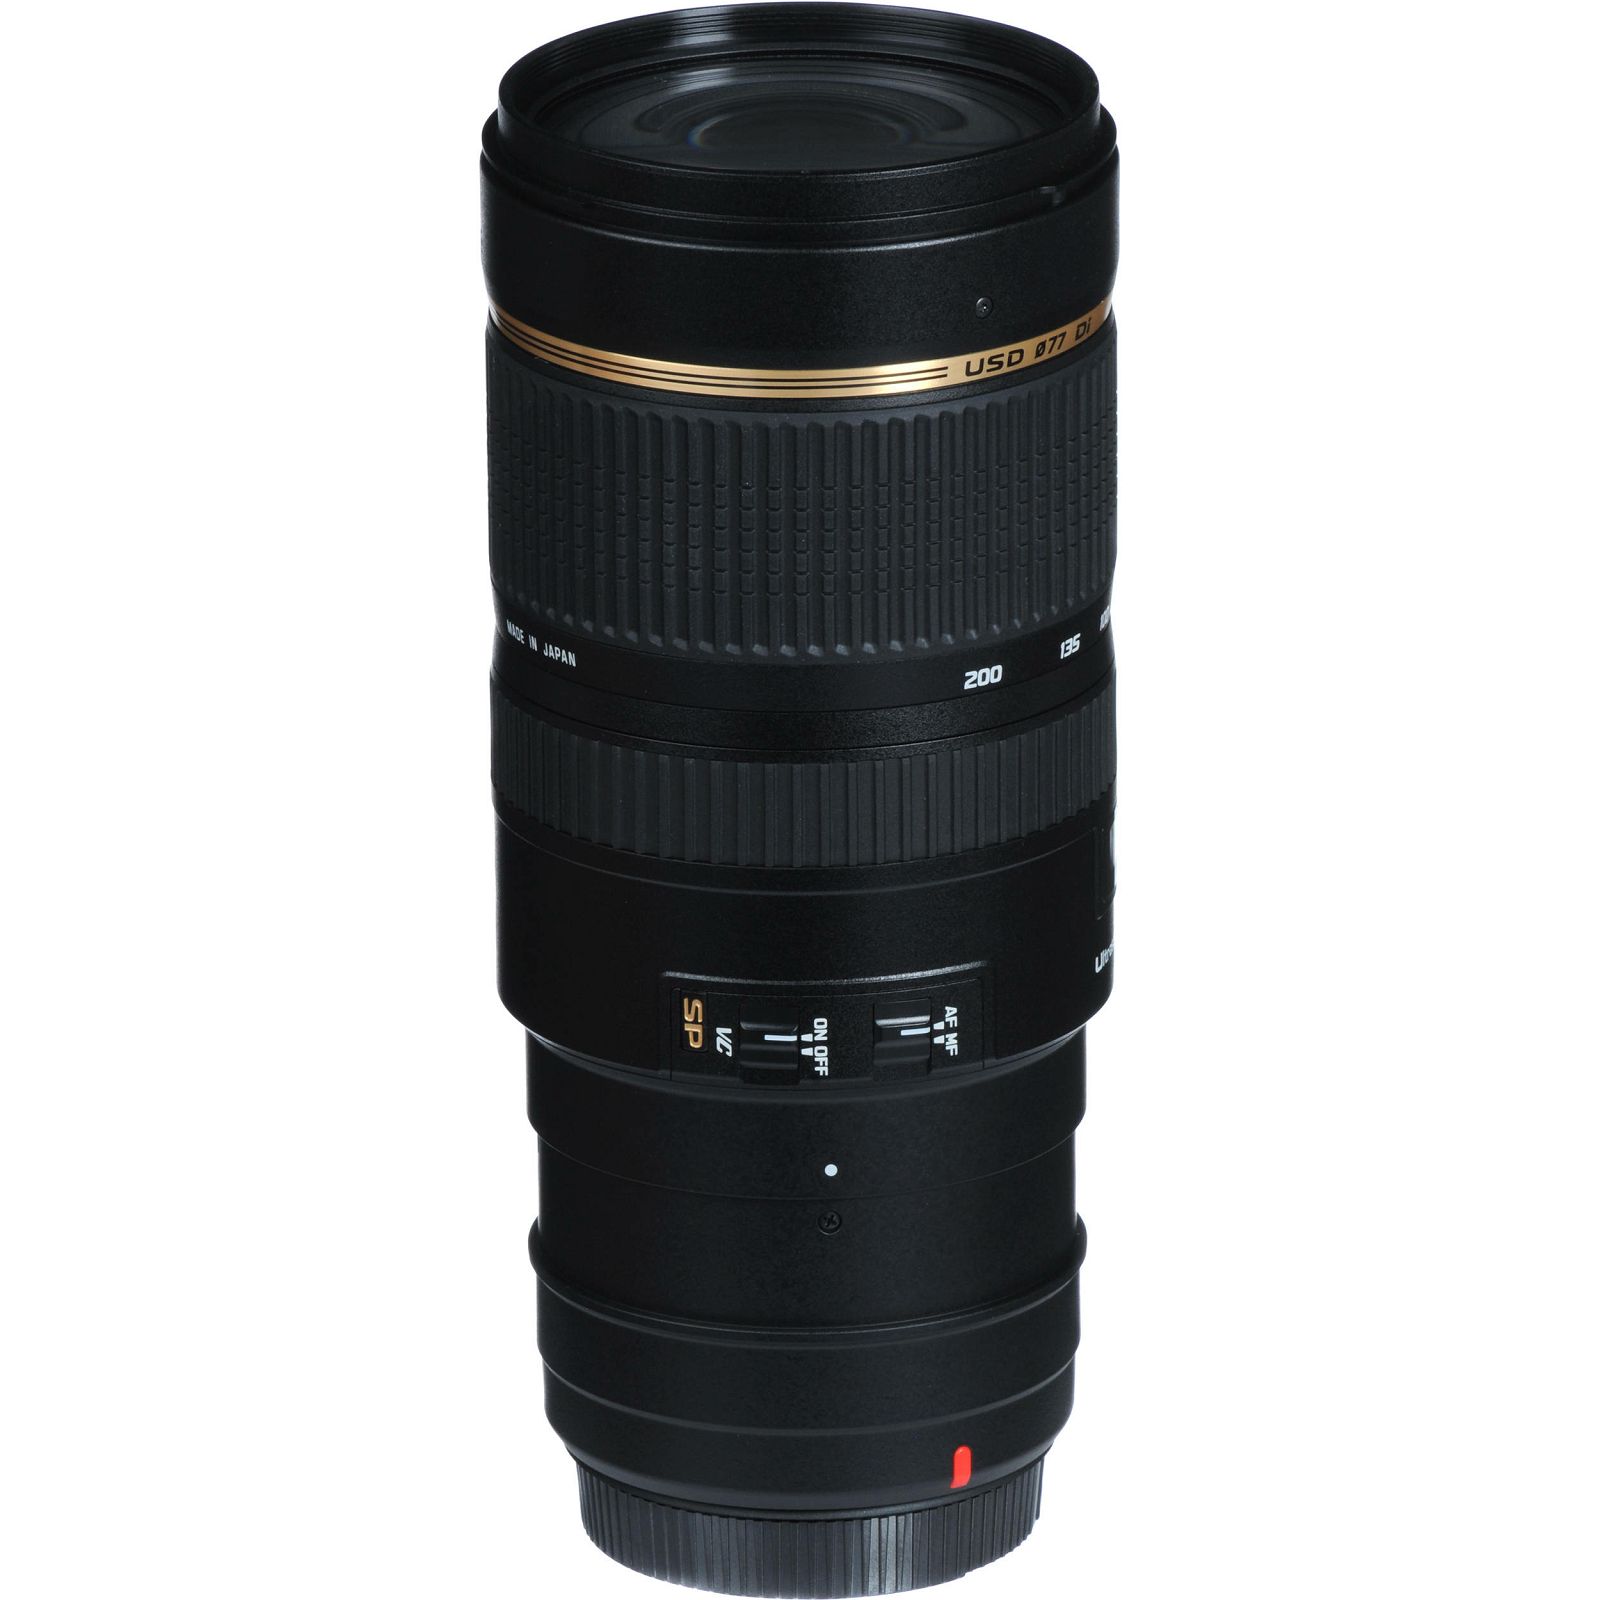 Tamron SP AF 70-200mm f/2.8 Di VC USD telefoto objektiv za Nikon FX (A009NII)